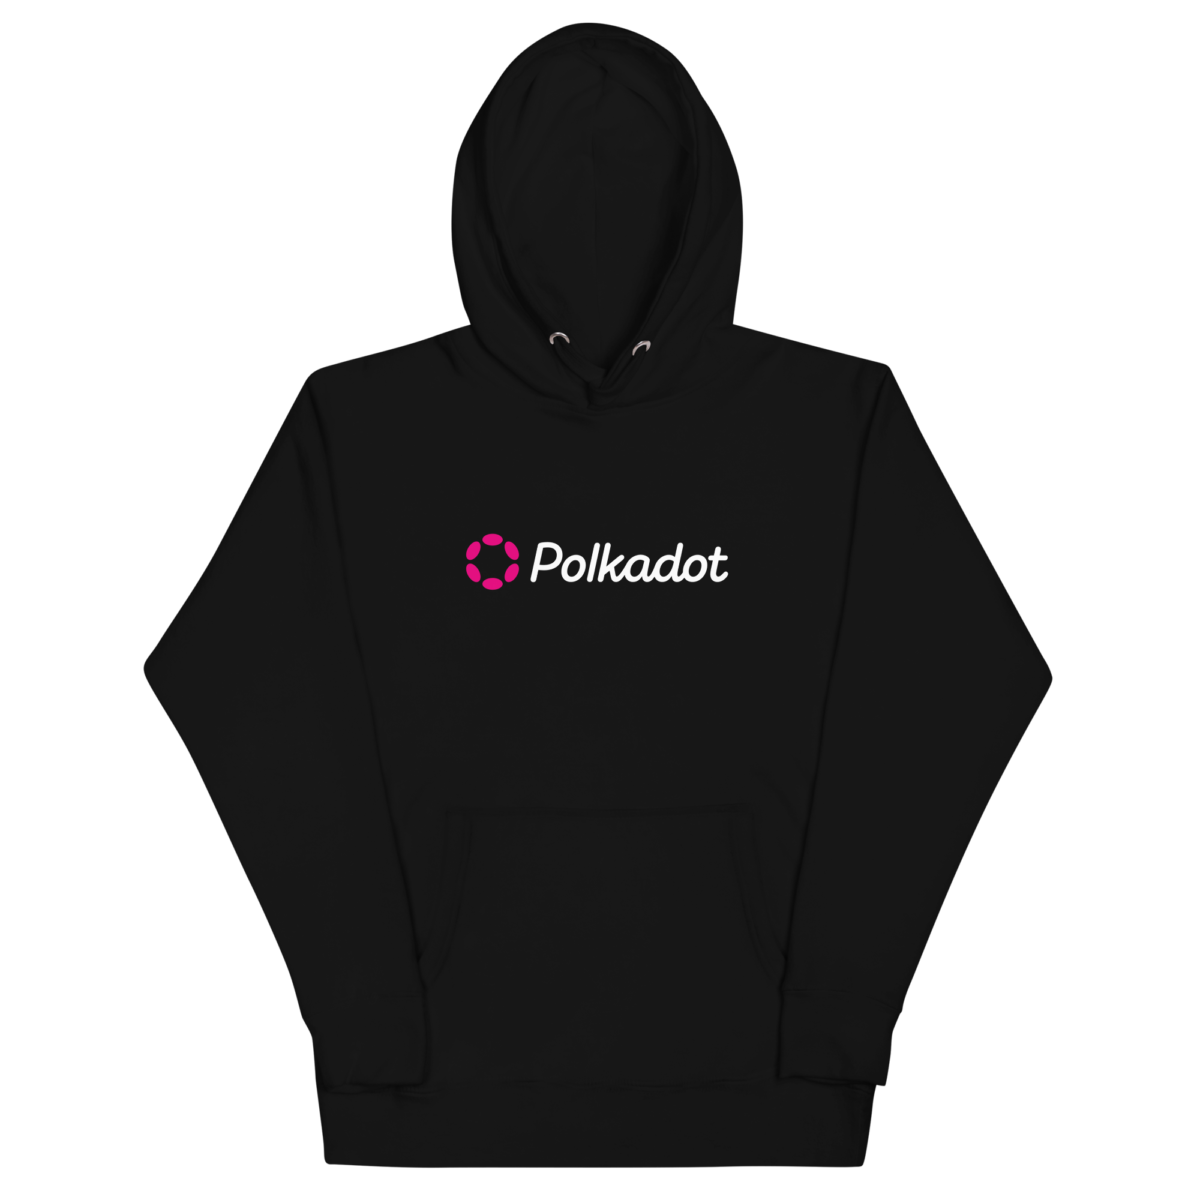 unisex premium hoodie black front 6338b54c75014 - Polkadot Black Hoodie